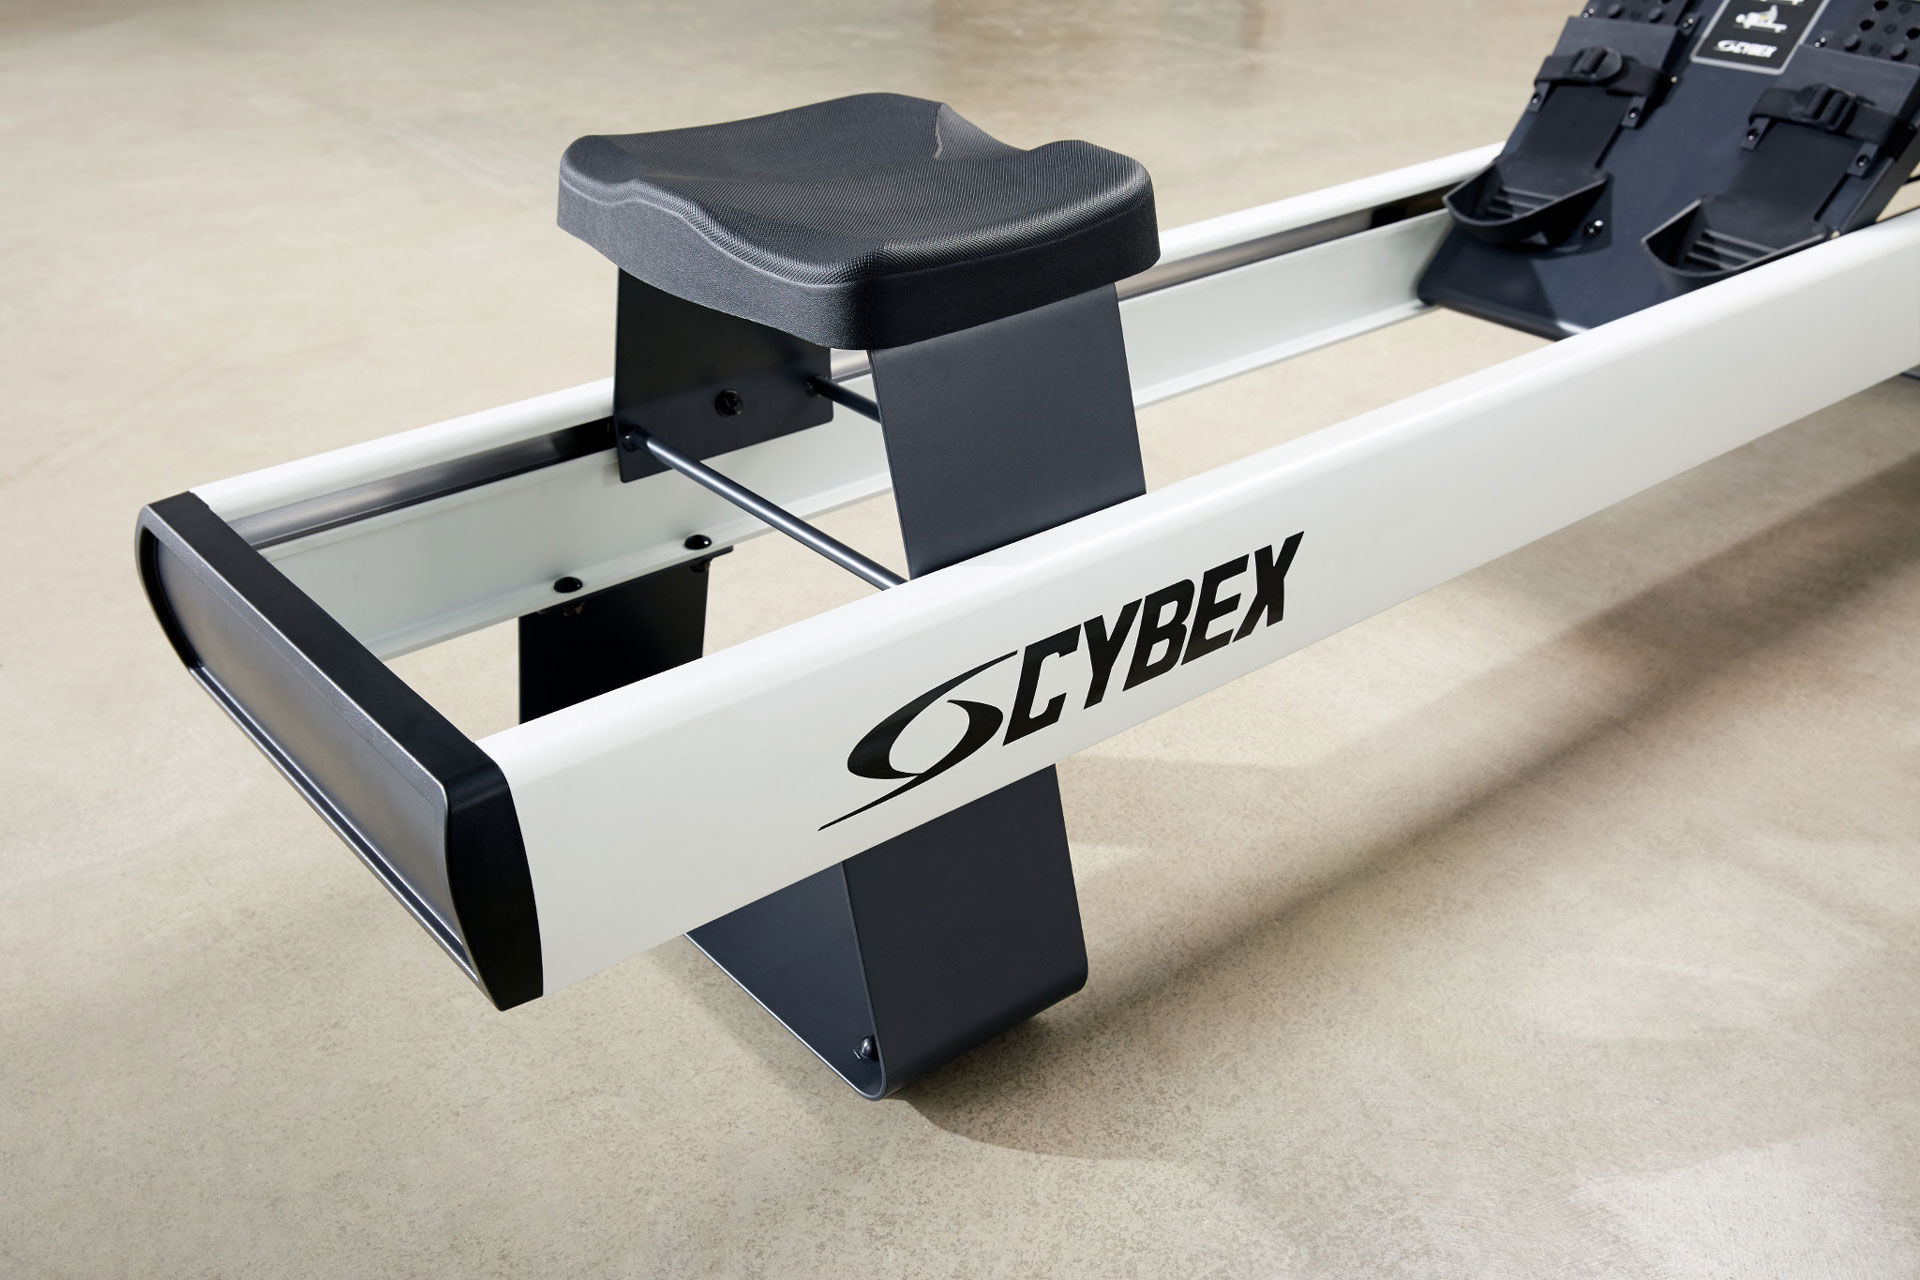 Conociendo la poderosa Cybex Hydro Rower, lo mejor en máquinas de remo